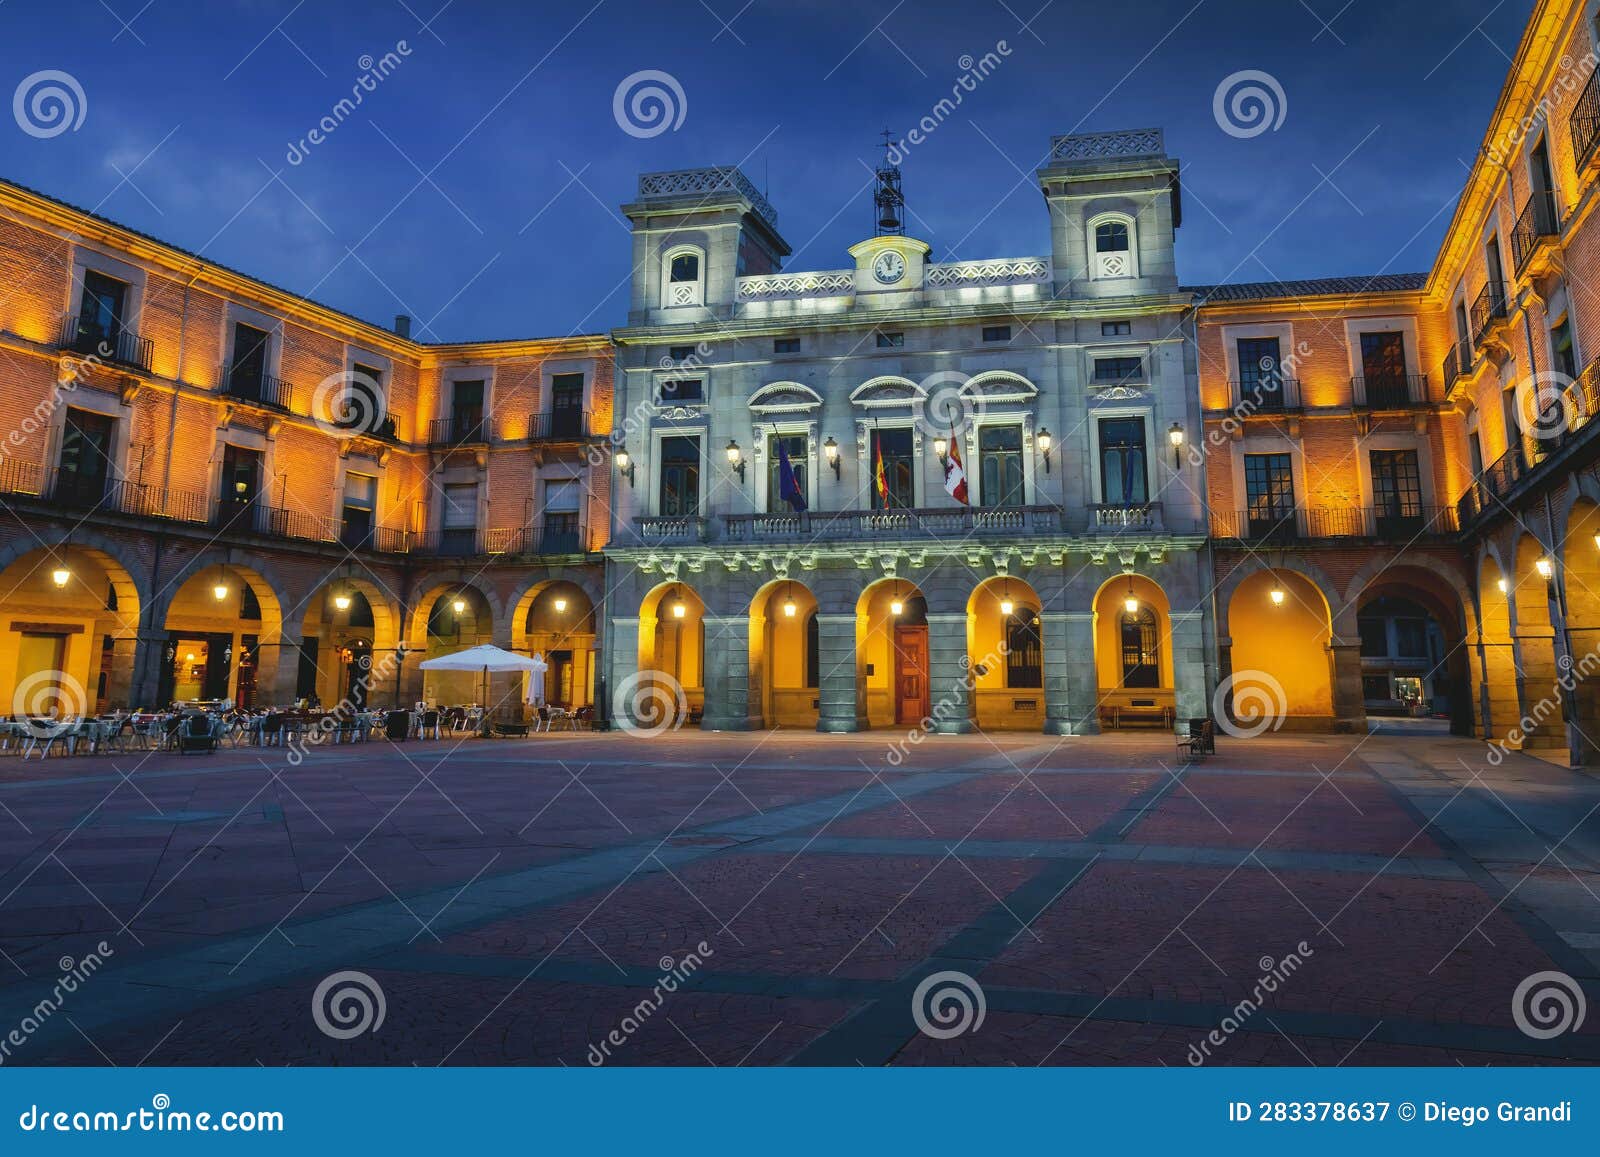 avila town hall at plaza del mercado chico square at night - avila, spain